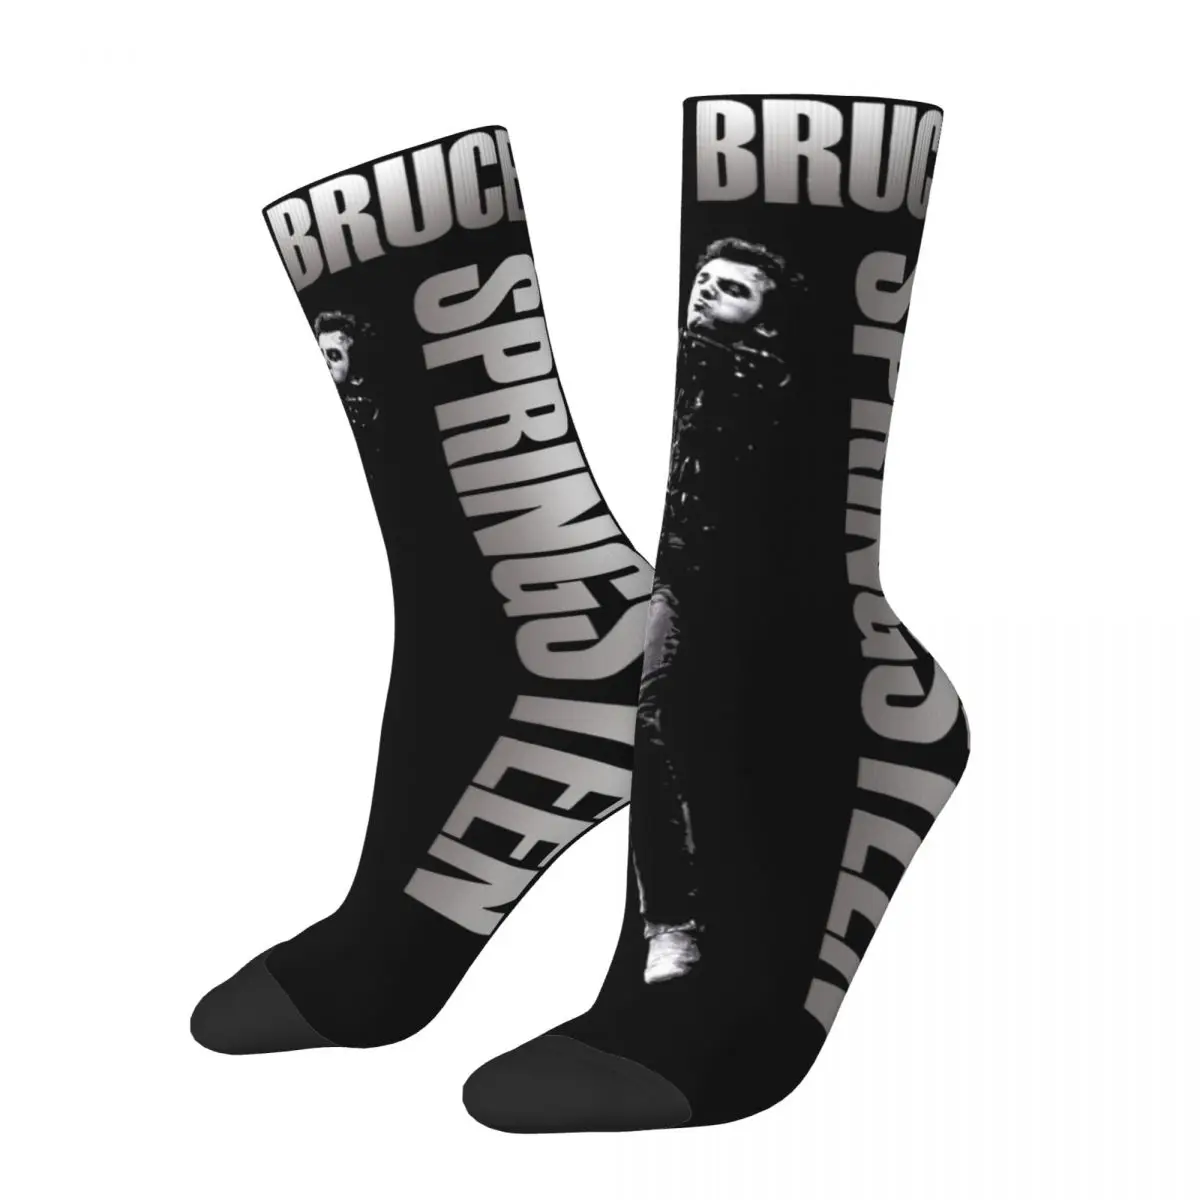 

Bruce Springsteen Cool Singer Merch Crew Socks Non-slip Rock Music Skateboard Long Stockings Soft for Men's Gifts